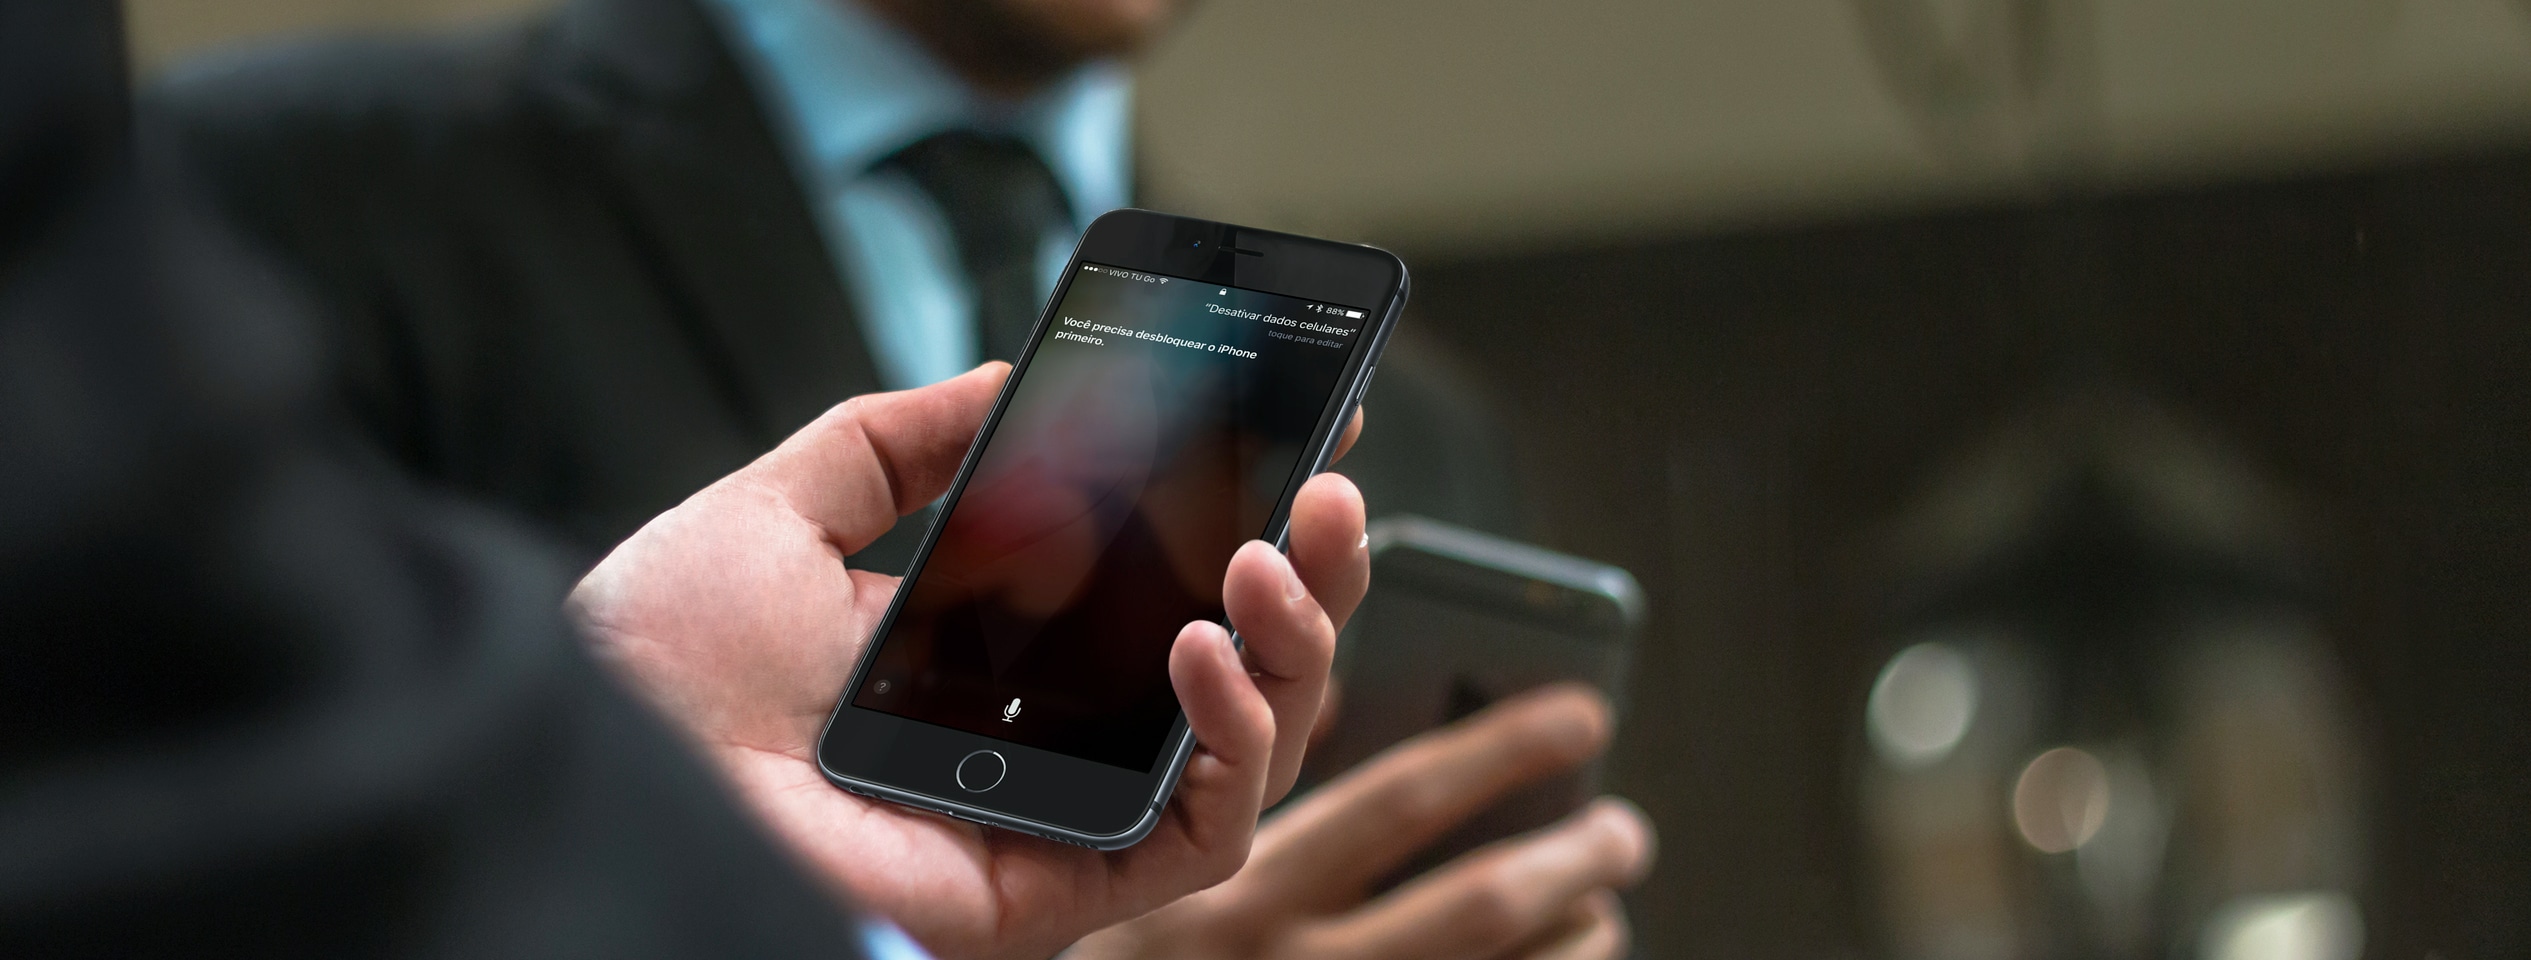 Apple'i kiibimeeskond töötab juba iPhone'i / iPadi jaoks sobiva modemi kallal